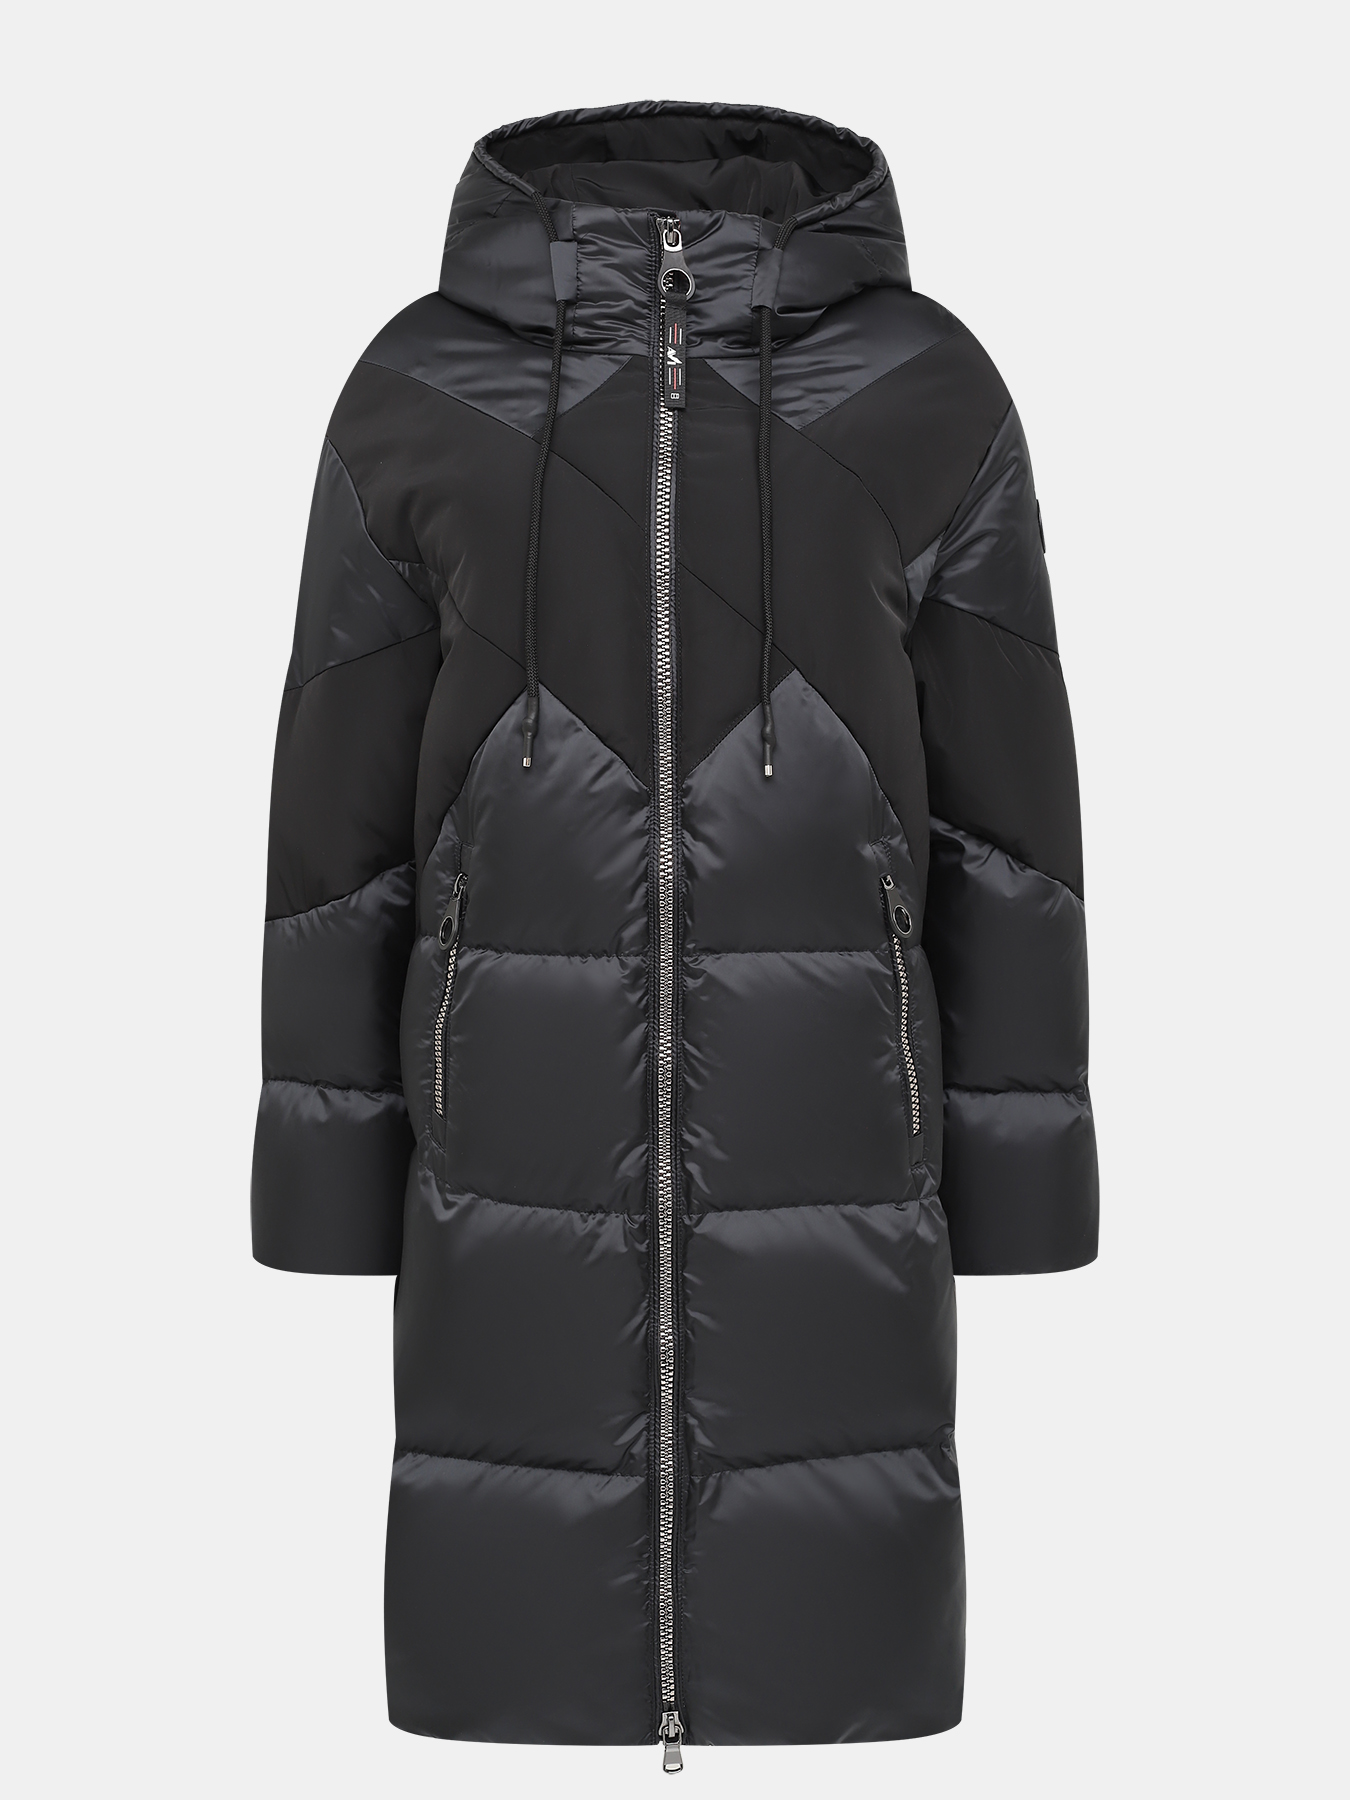 Пальто зимнее AVI 433593-020, цвет черный, размер 44